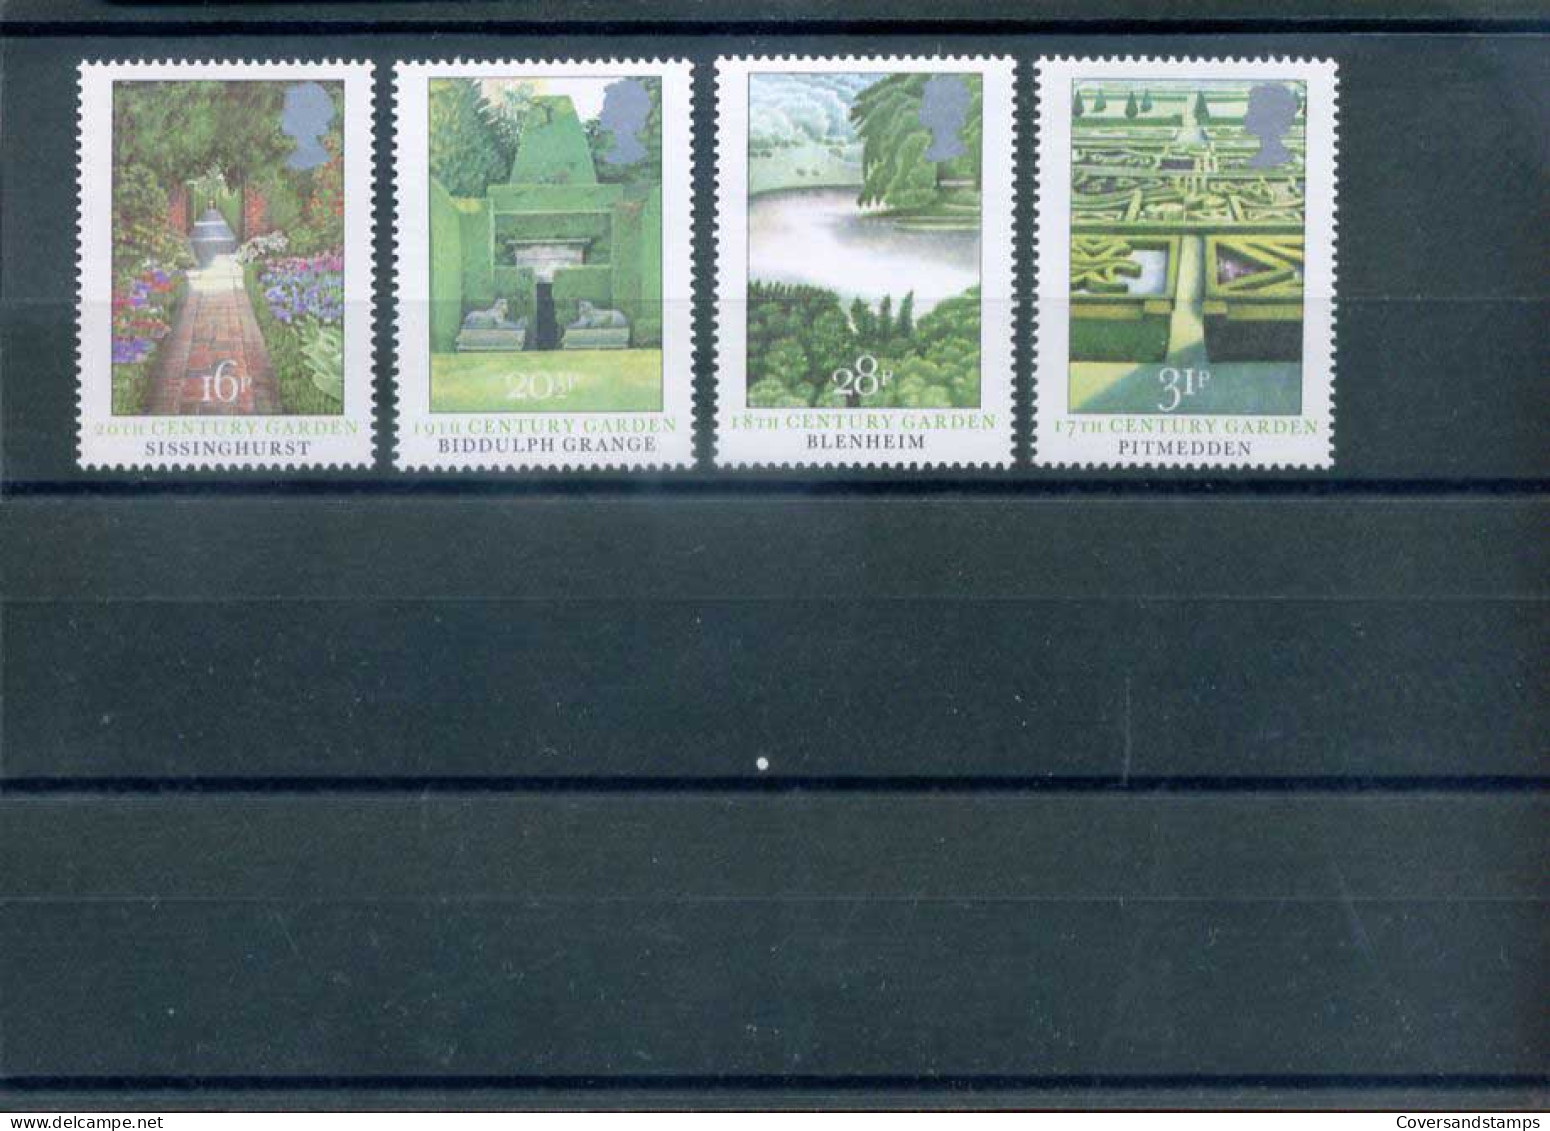 Groot-Brittannië  - 20th Century Gardens - Y 1100/03  -  Sc 1027/30     **  MNH                  - Neufs